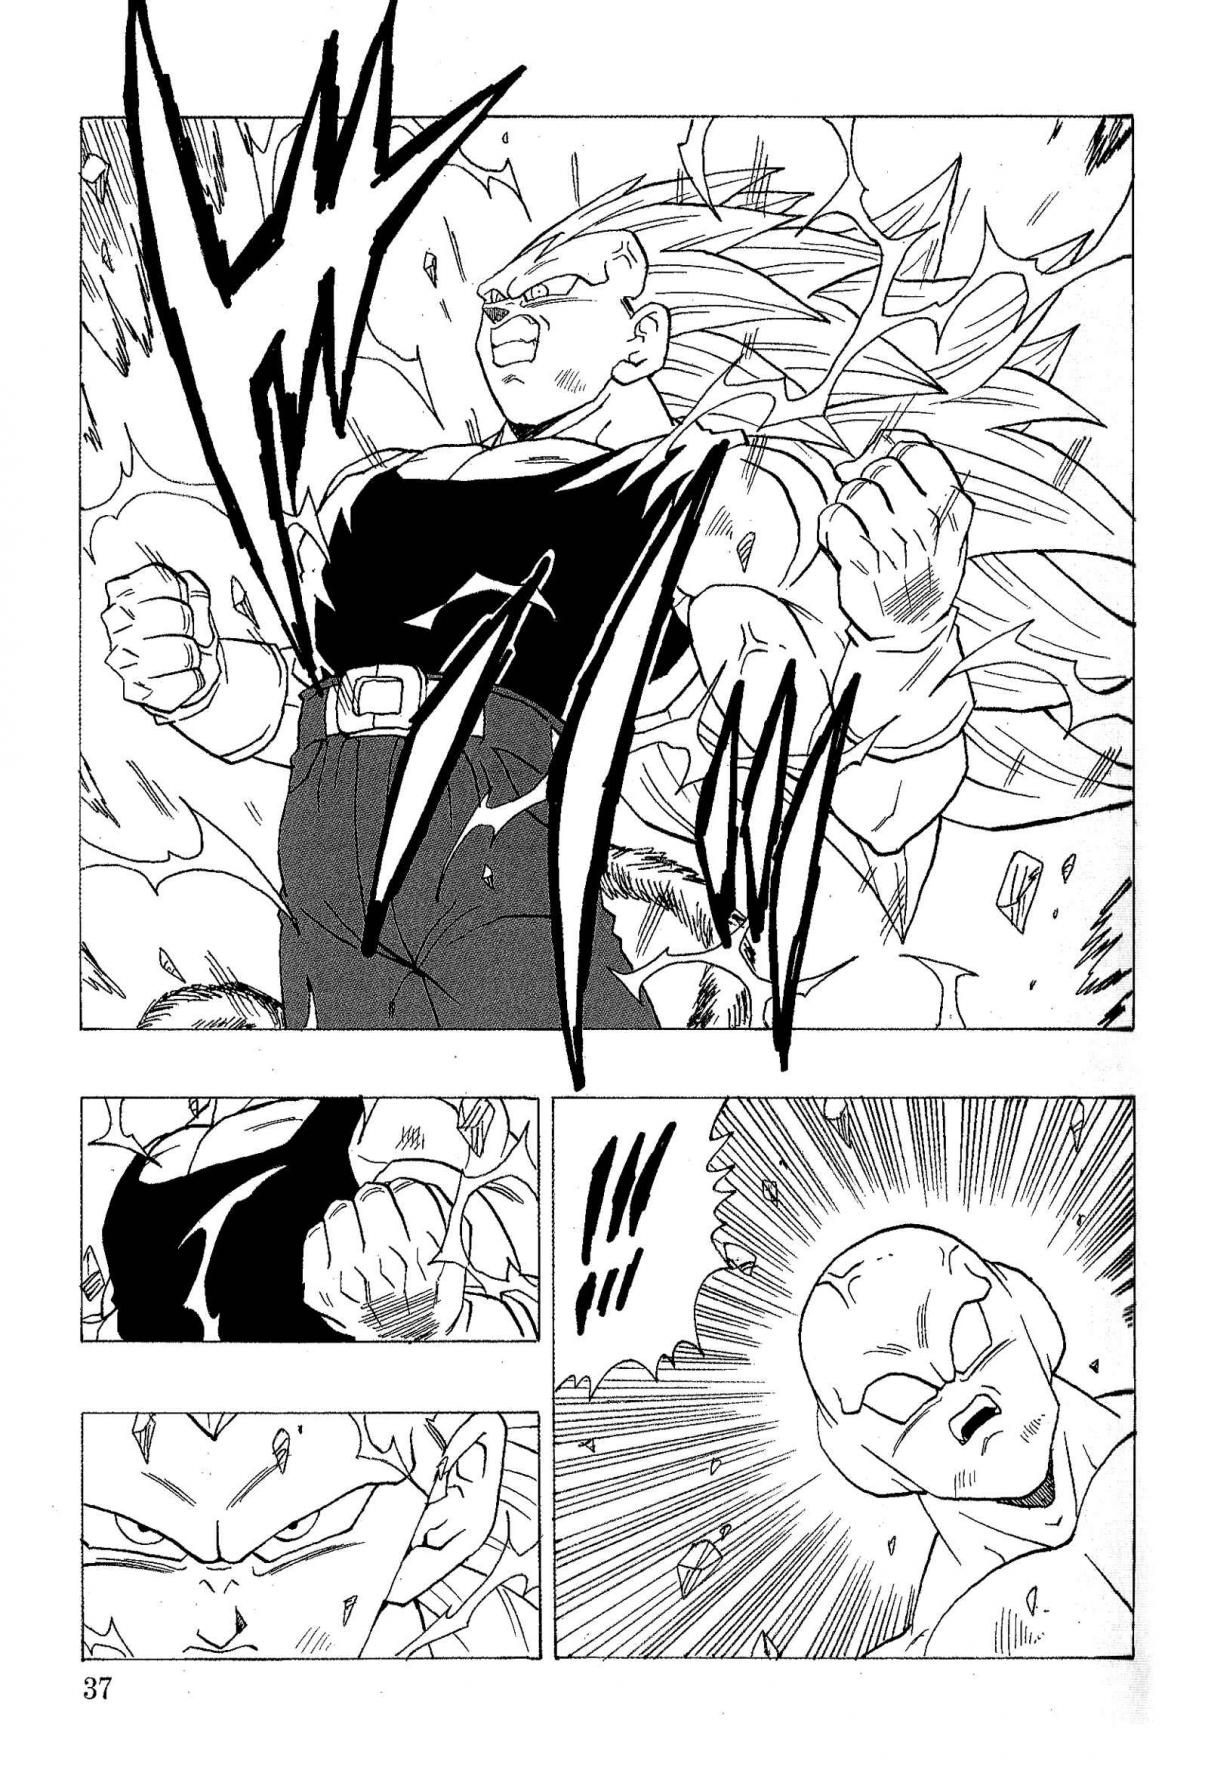 Dragon Ball AF (YOUNG JIJII) (Doujinshi) Ch. 18 The Mysterious Warrior, Spoitz!!